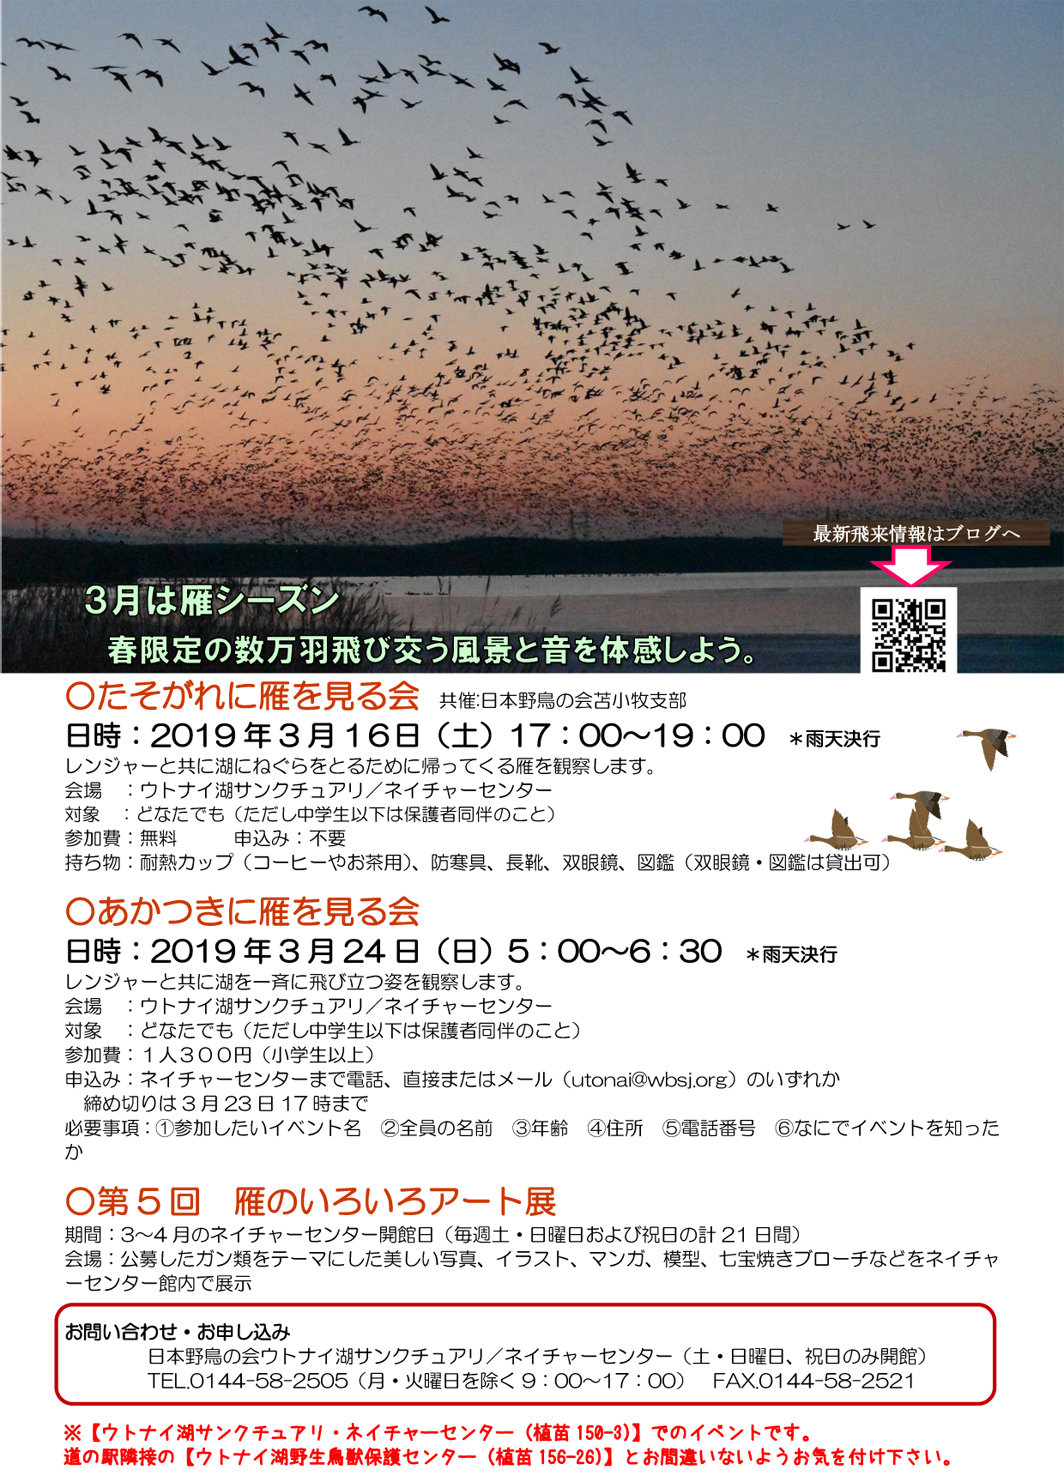 雁ウォッチングイベントのご案内 ウトナイ湖サンクチュアリ ブログ